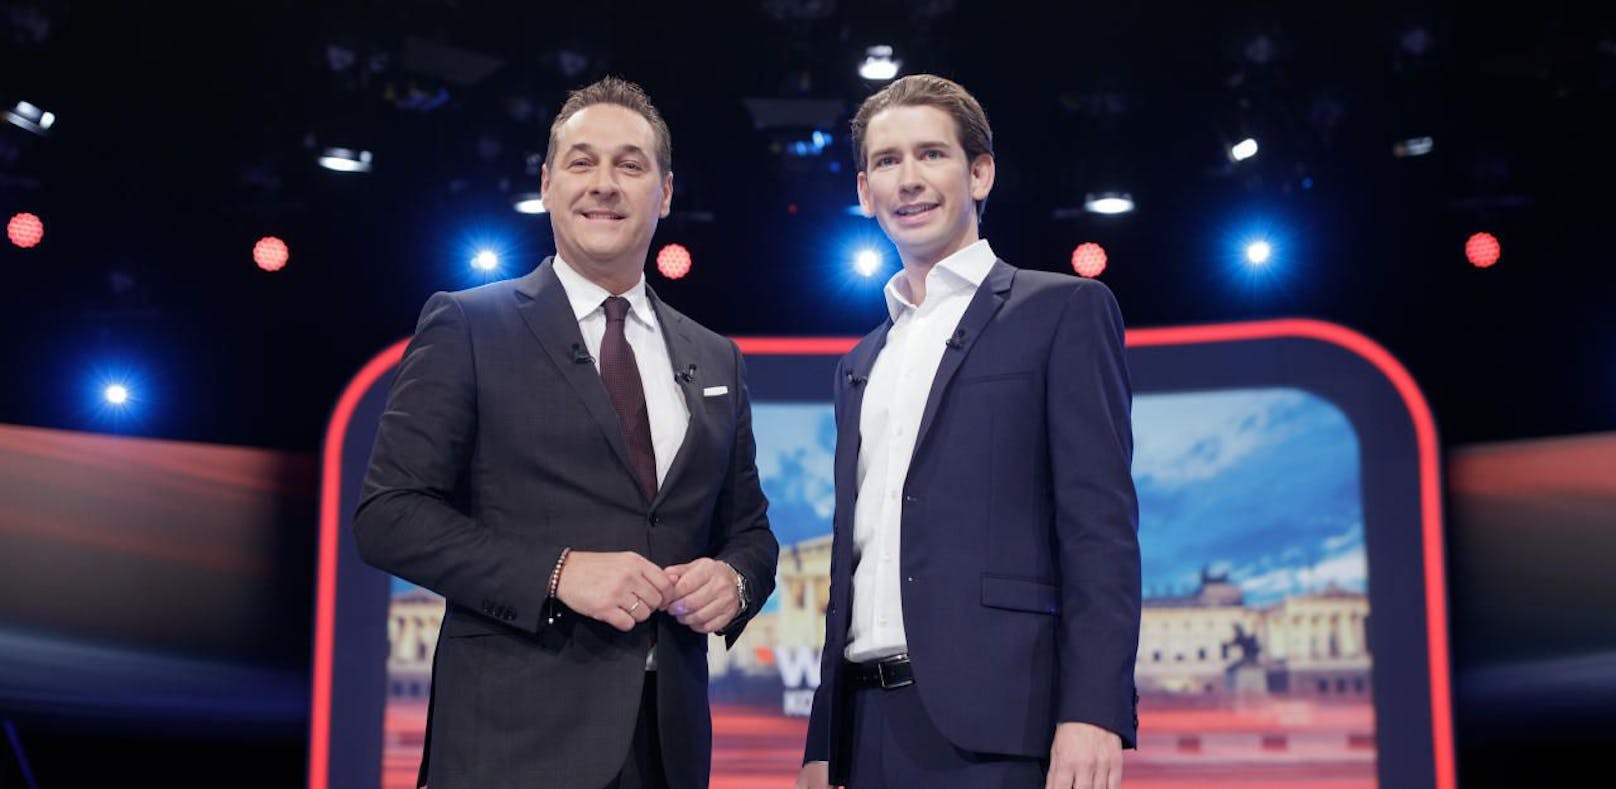 ÖVP und FPÖ erhalten mehr Parteienförderung